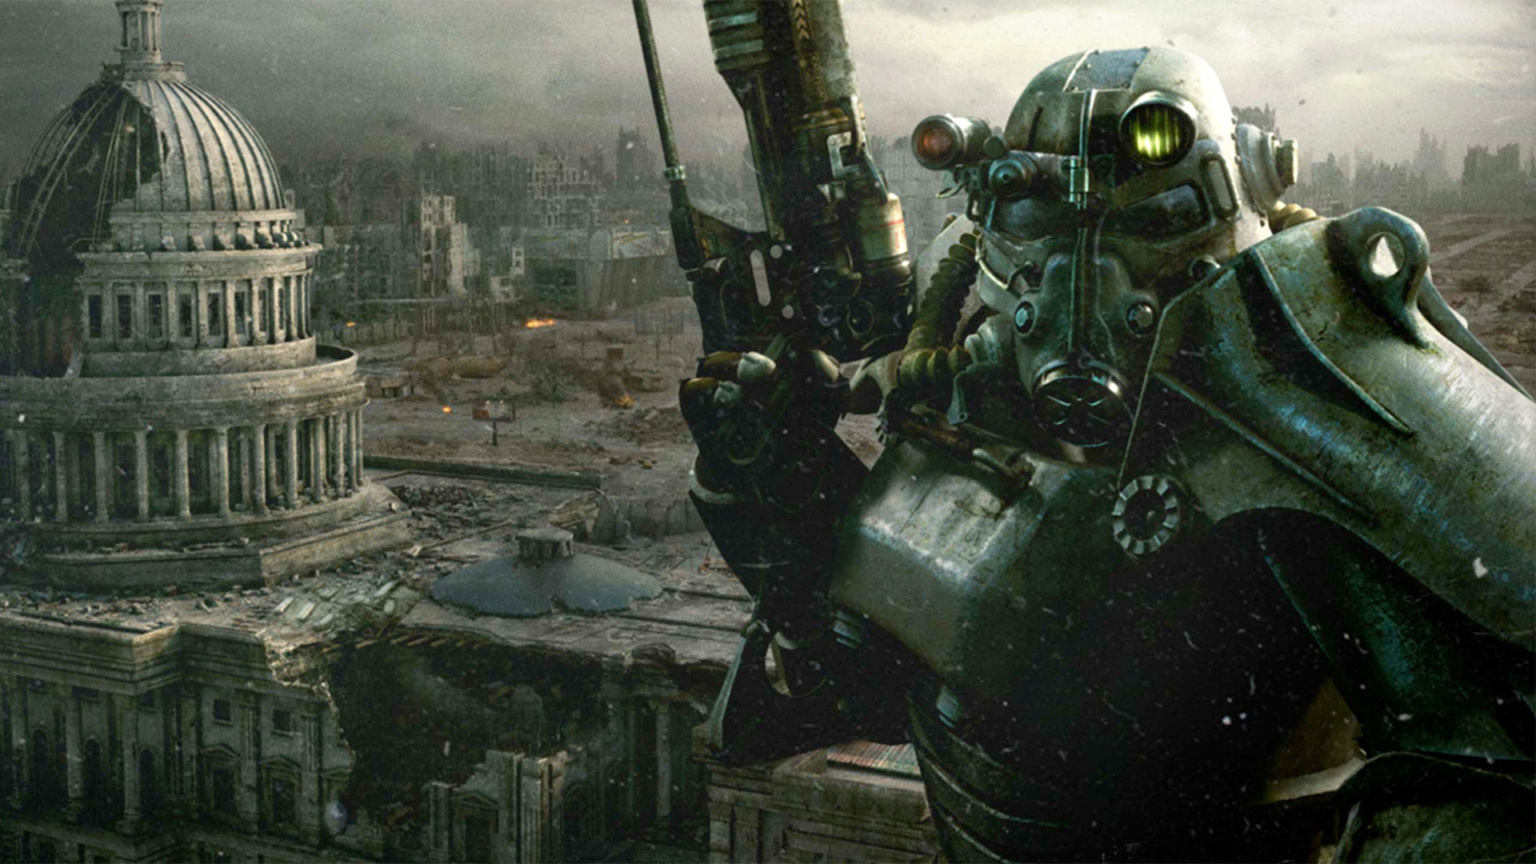 Фото та відео зі зйомок серіалу Fallout з супермаркетом з третьої та четвертої частин